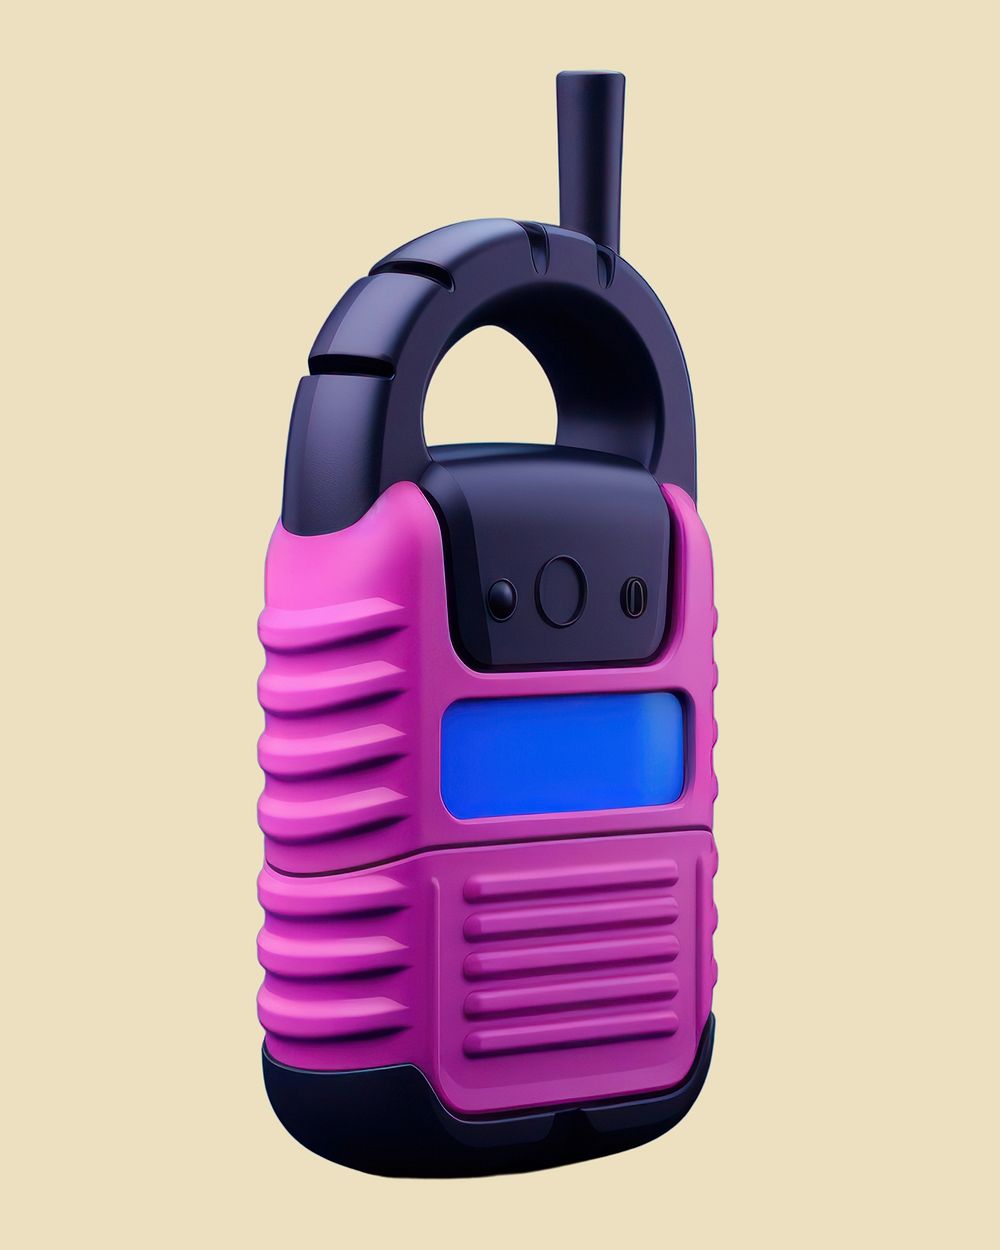 Pink handheld walkie talkie device